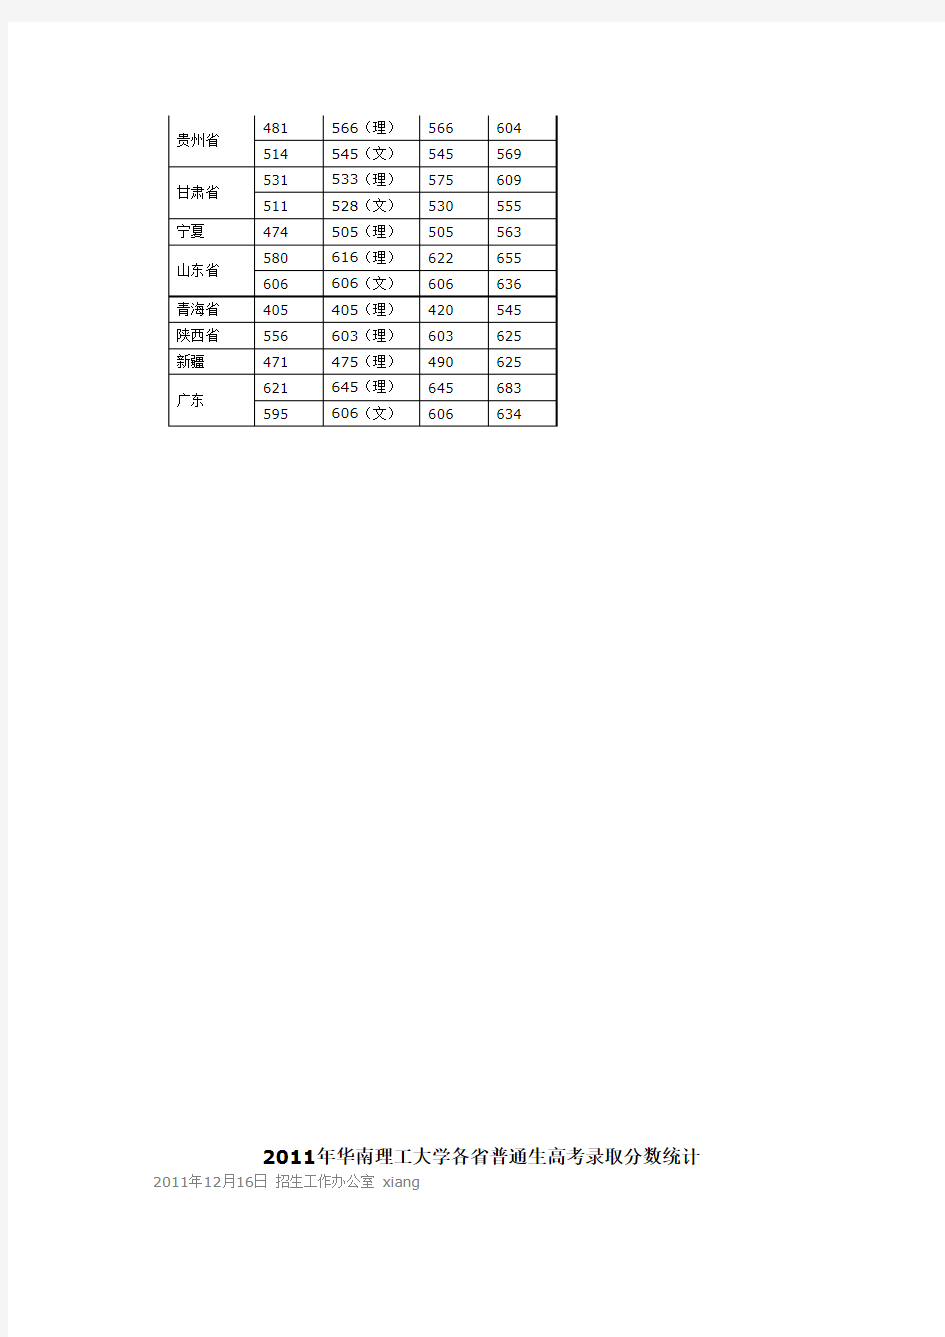 2010-2012年华南理工大学各省普通生高考录取分数统计